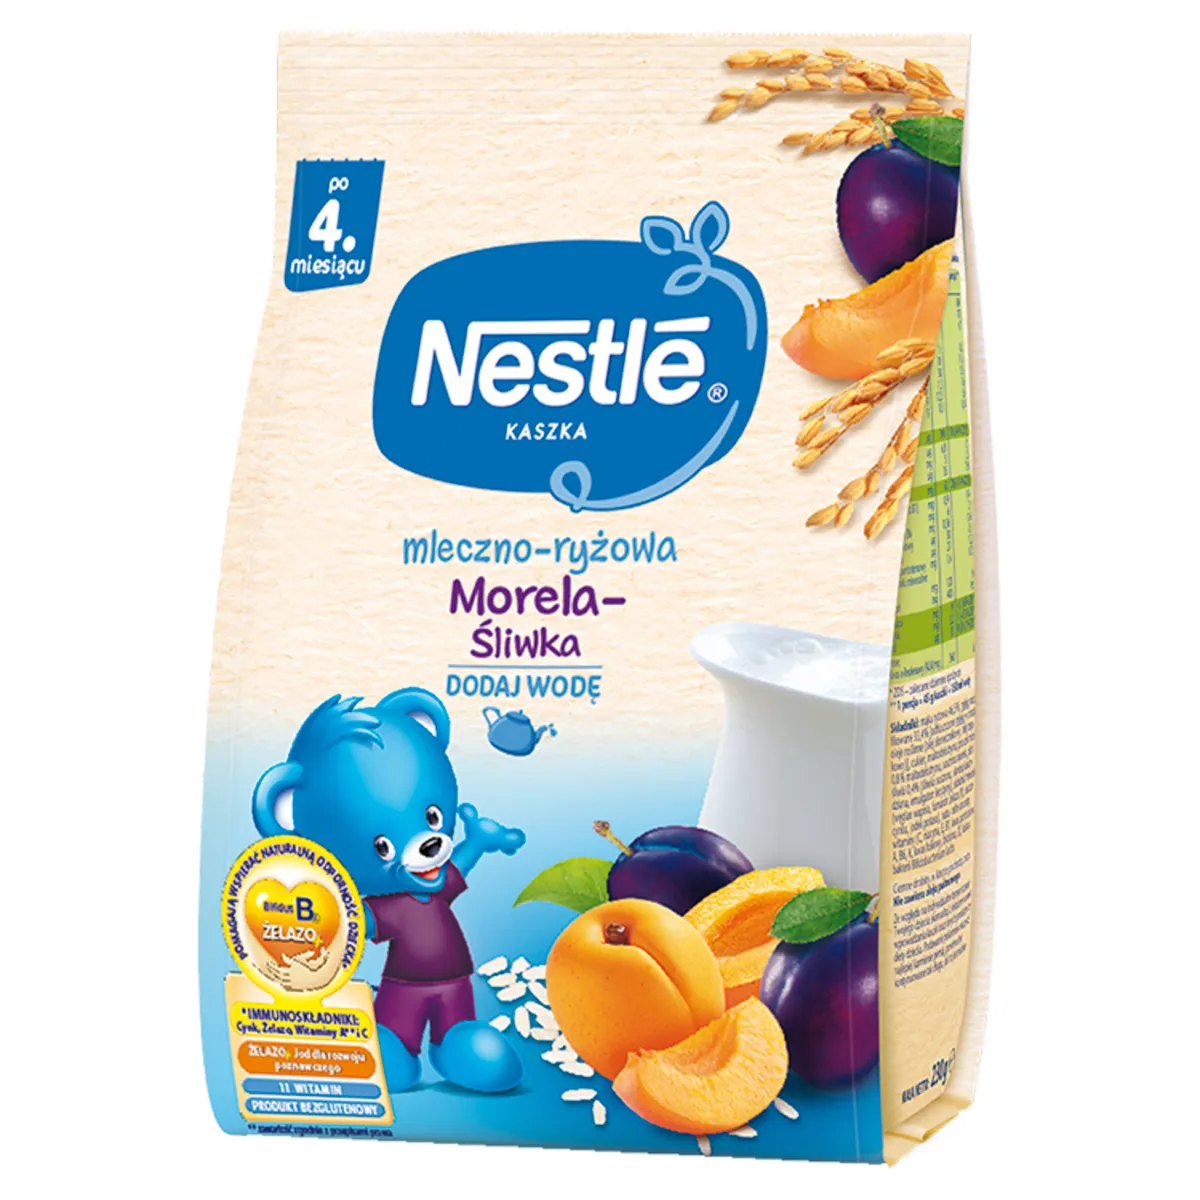 Nestle kaszka mleczno-ryżowa śliwka morela dla niemowląt po 4 miesiącu, 230 g